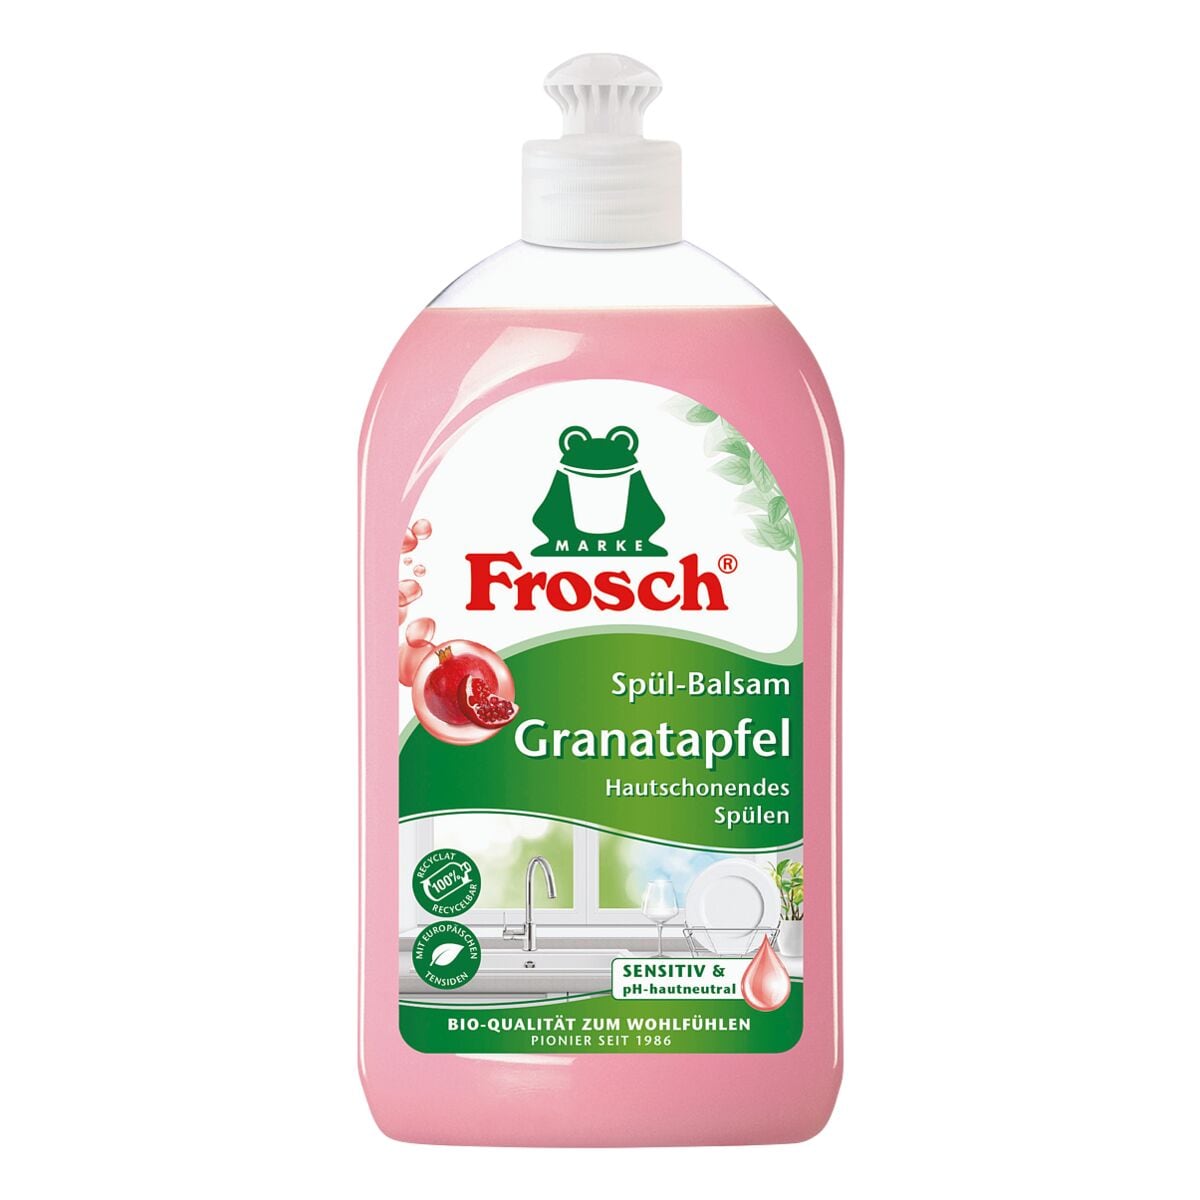 Frosch Spl-Balsam Granatapfel 500 ml